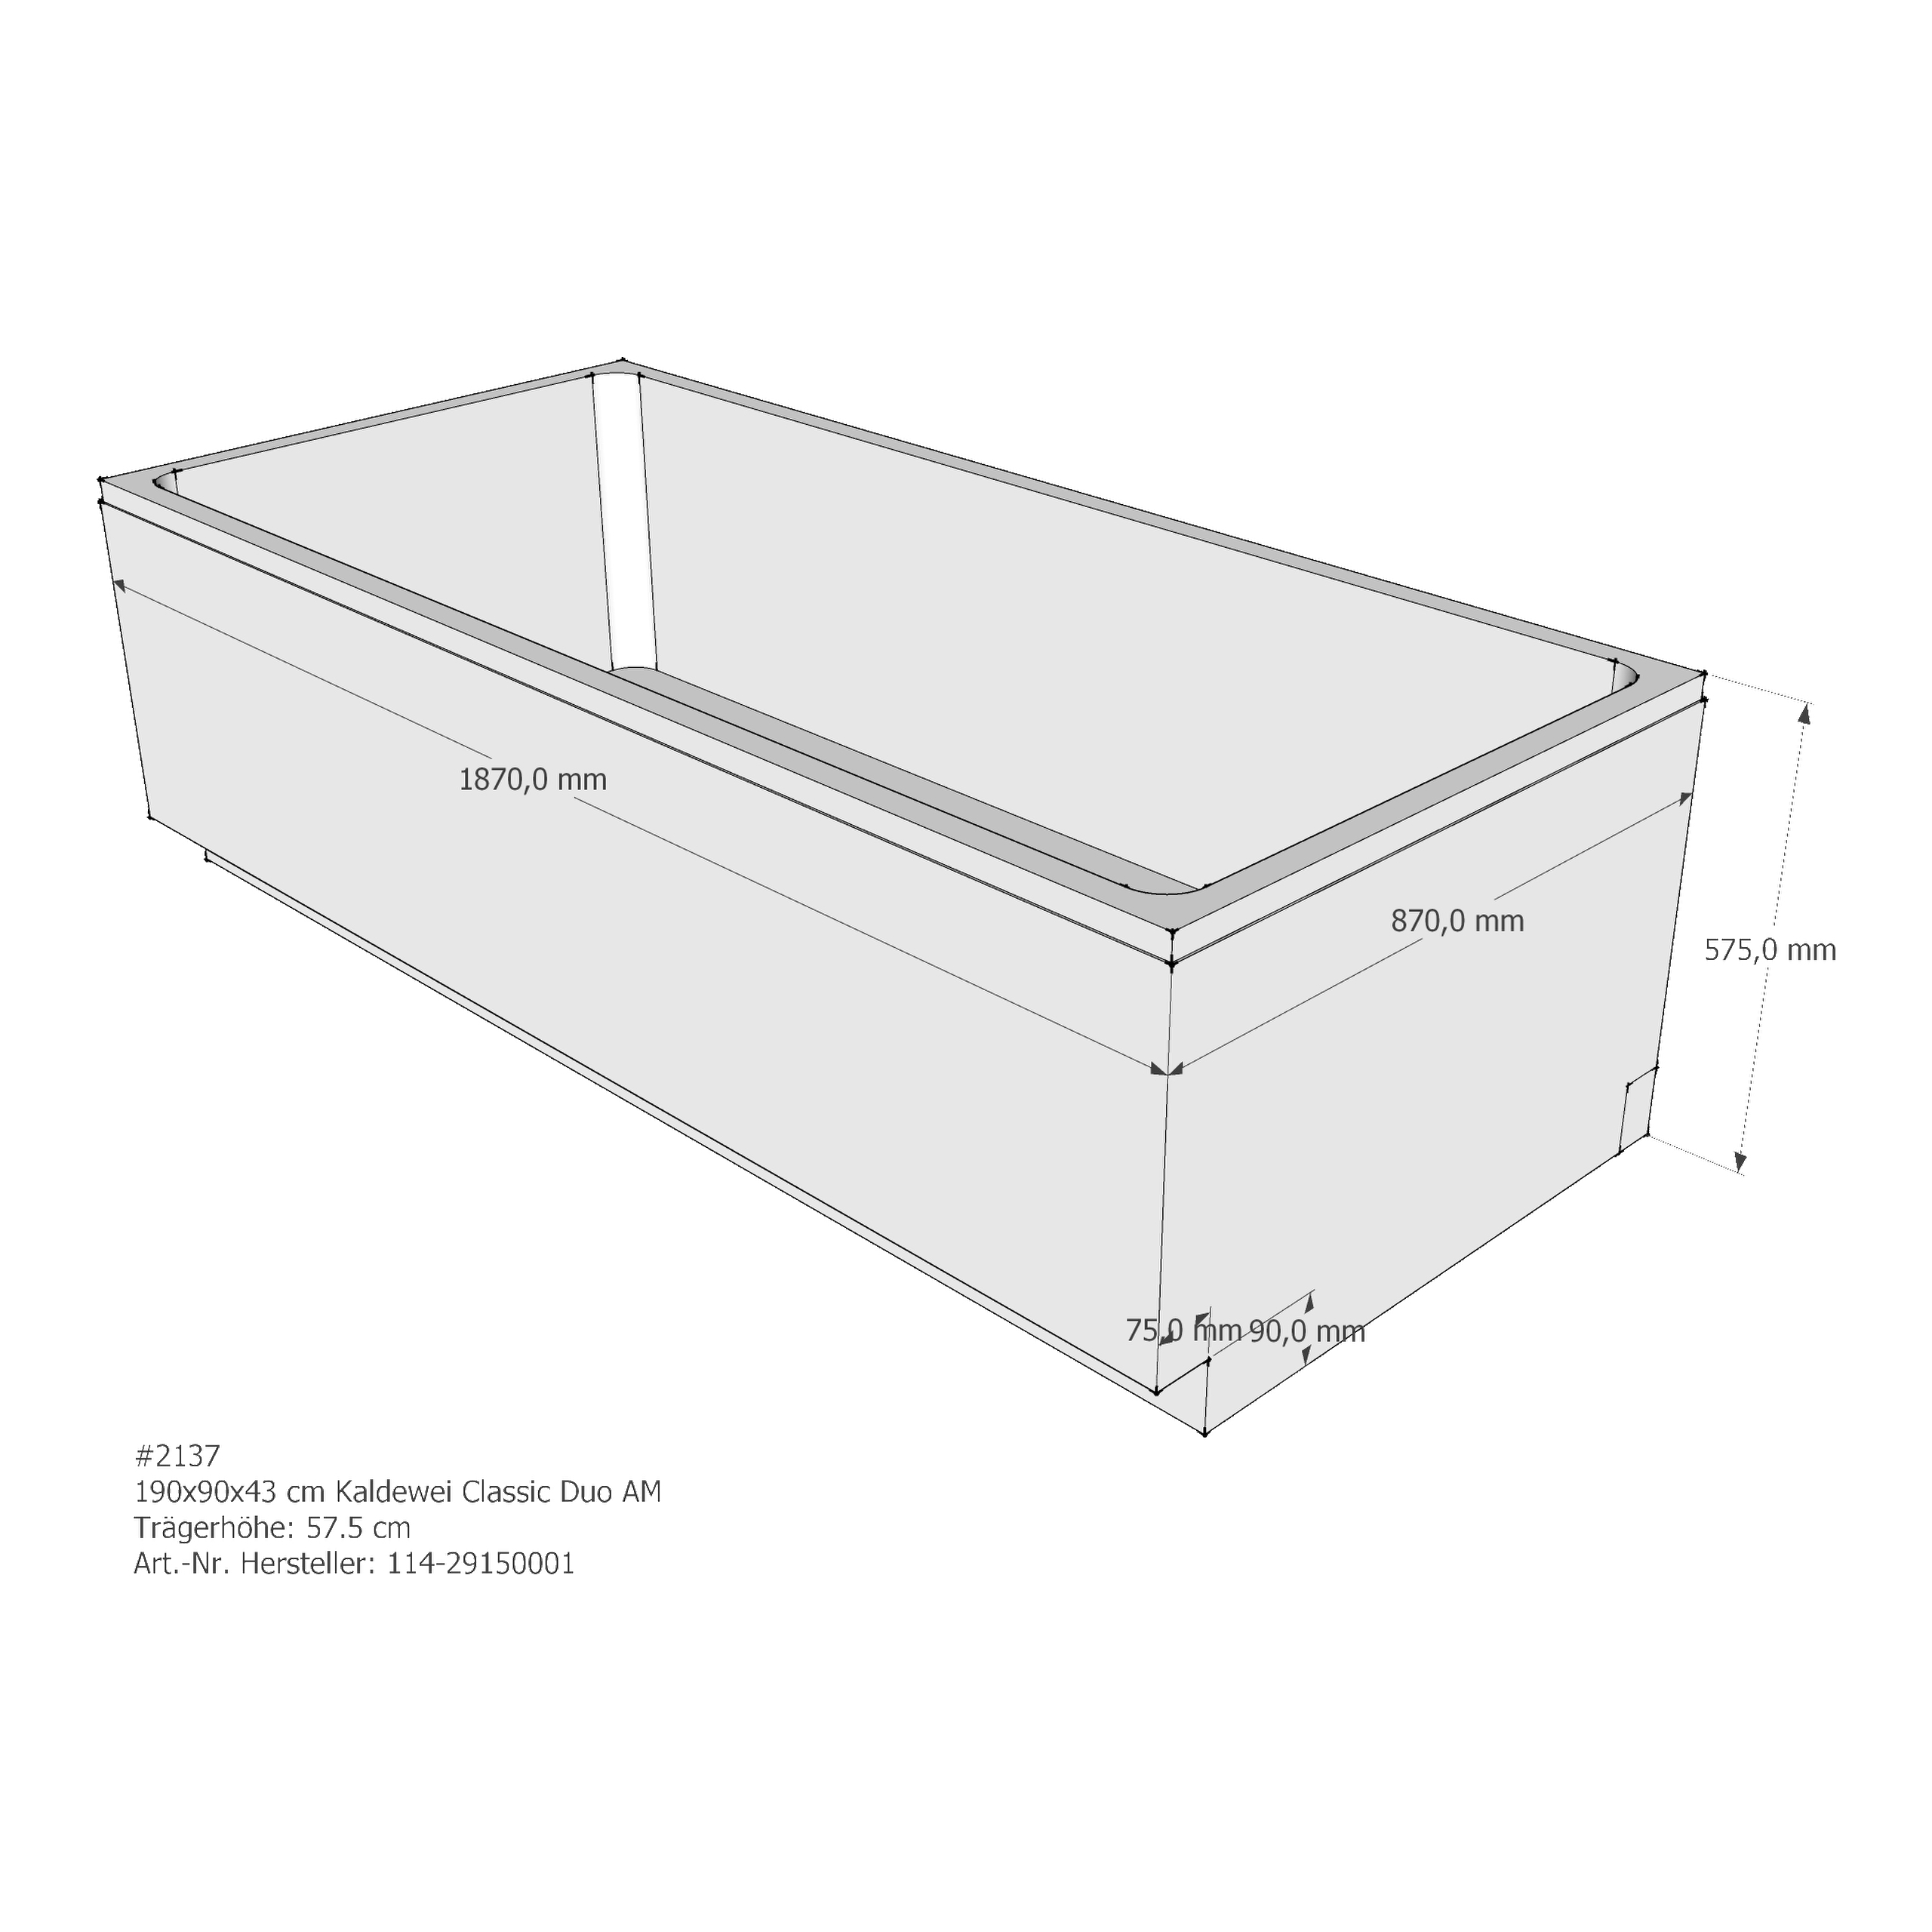 Badewannenträger für Kaldewei Classic Duo 190 × 90 × 43 cm